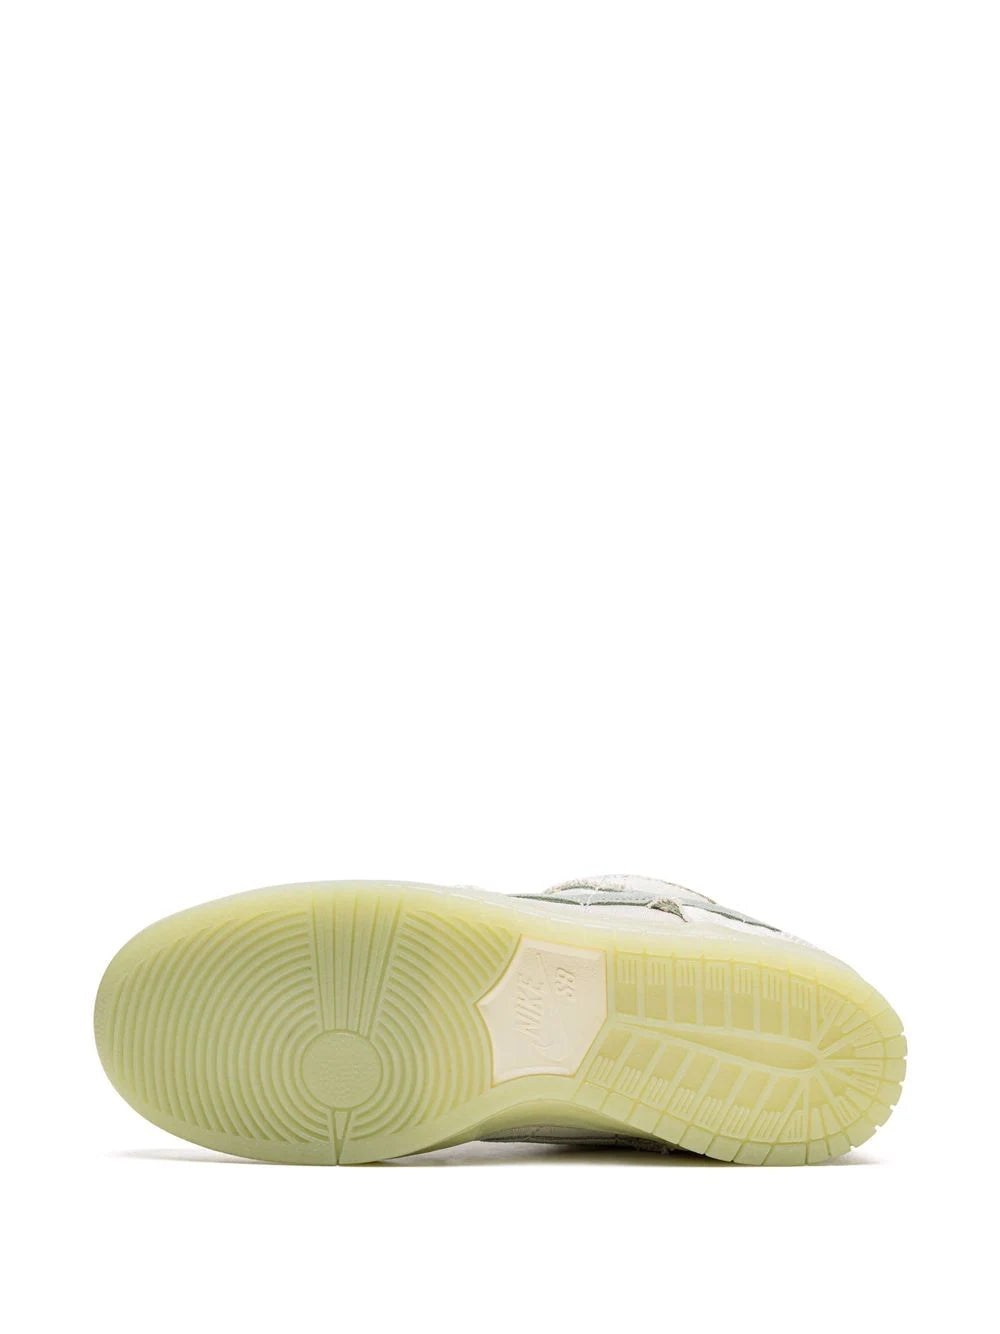 Shoellist | Nike SB Dunk Low "Mummy" sneakers